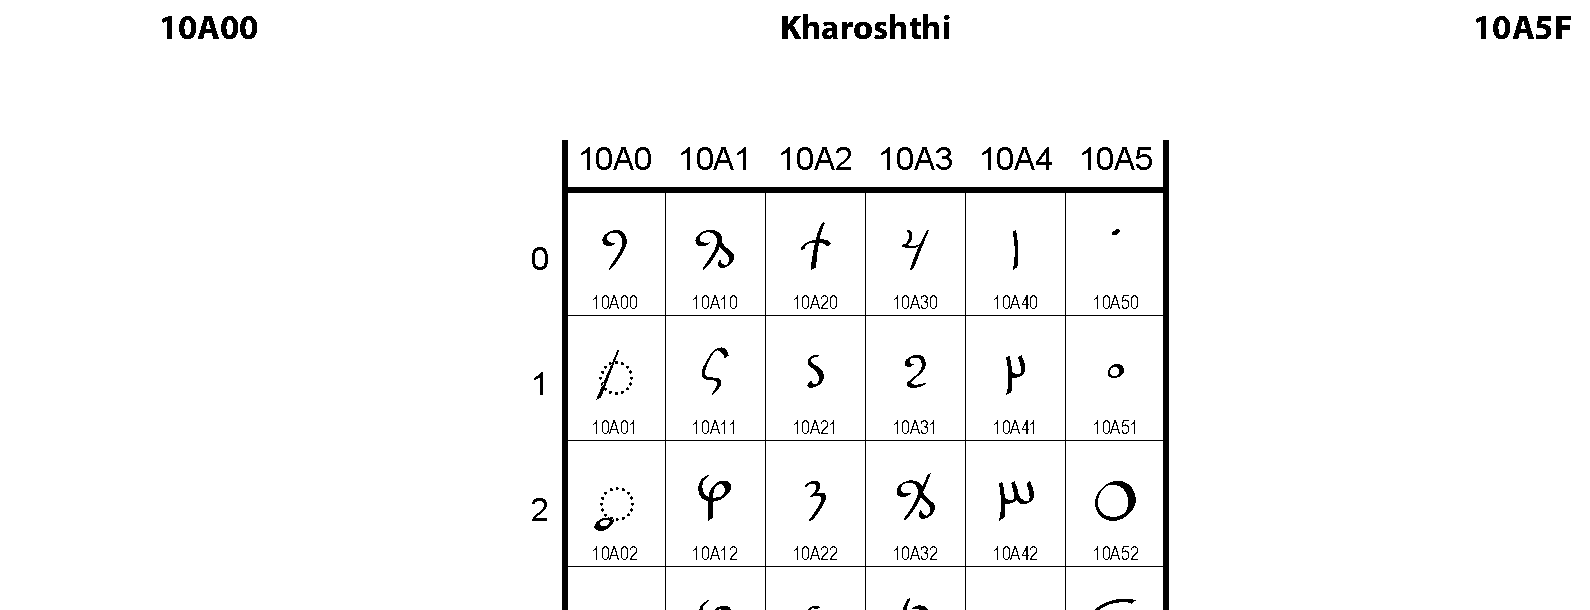 Unicode - Kharoshthi